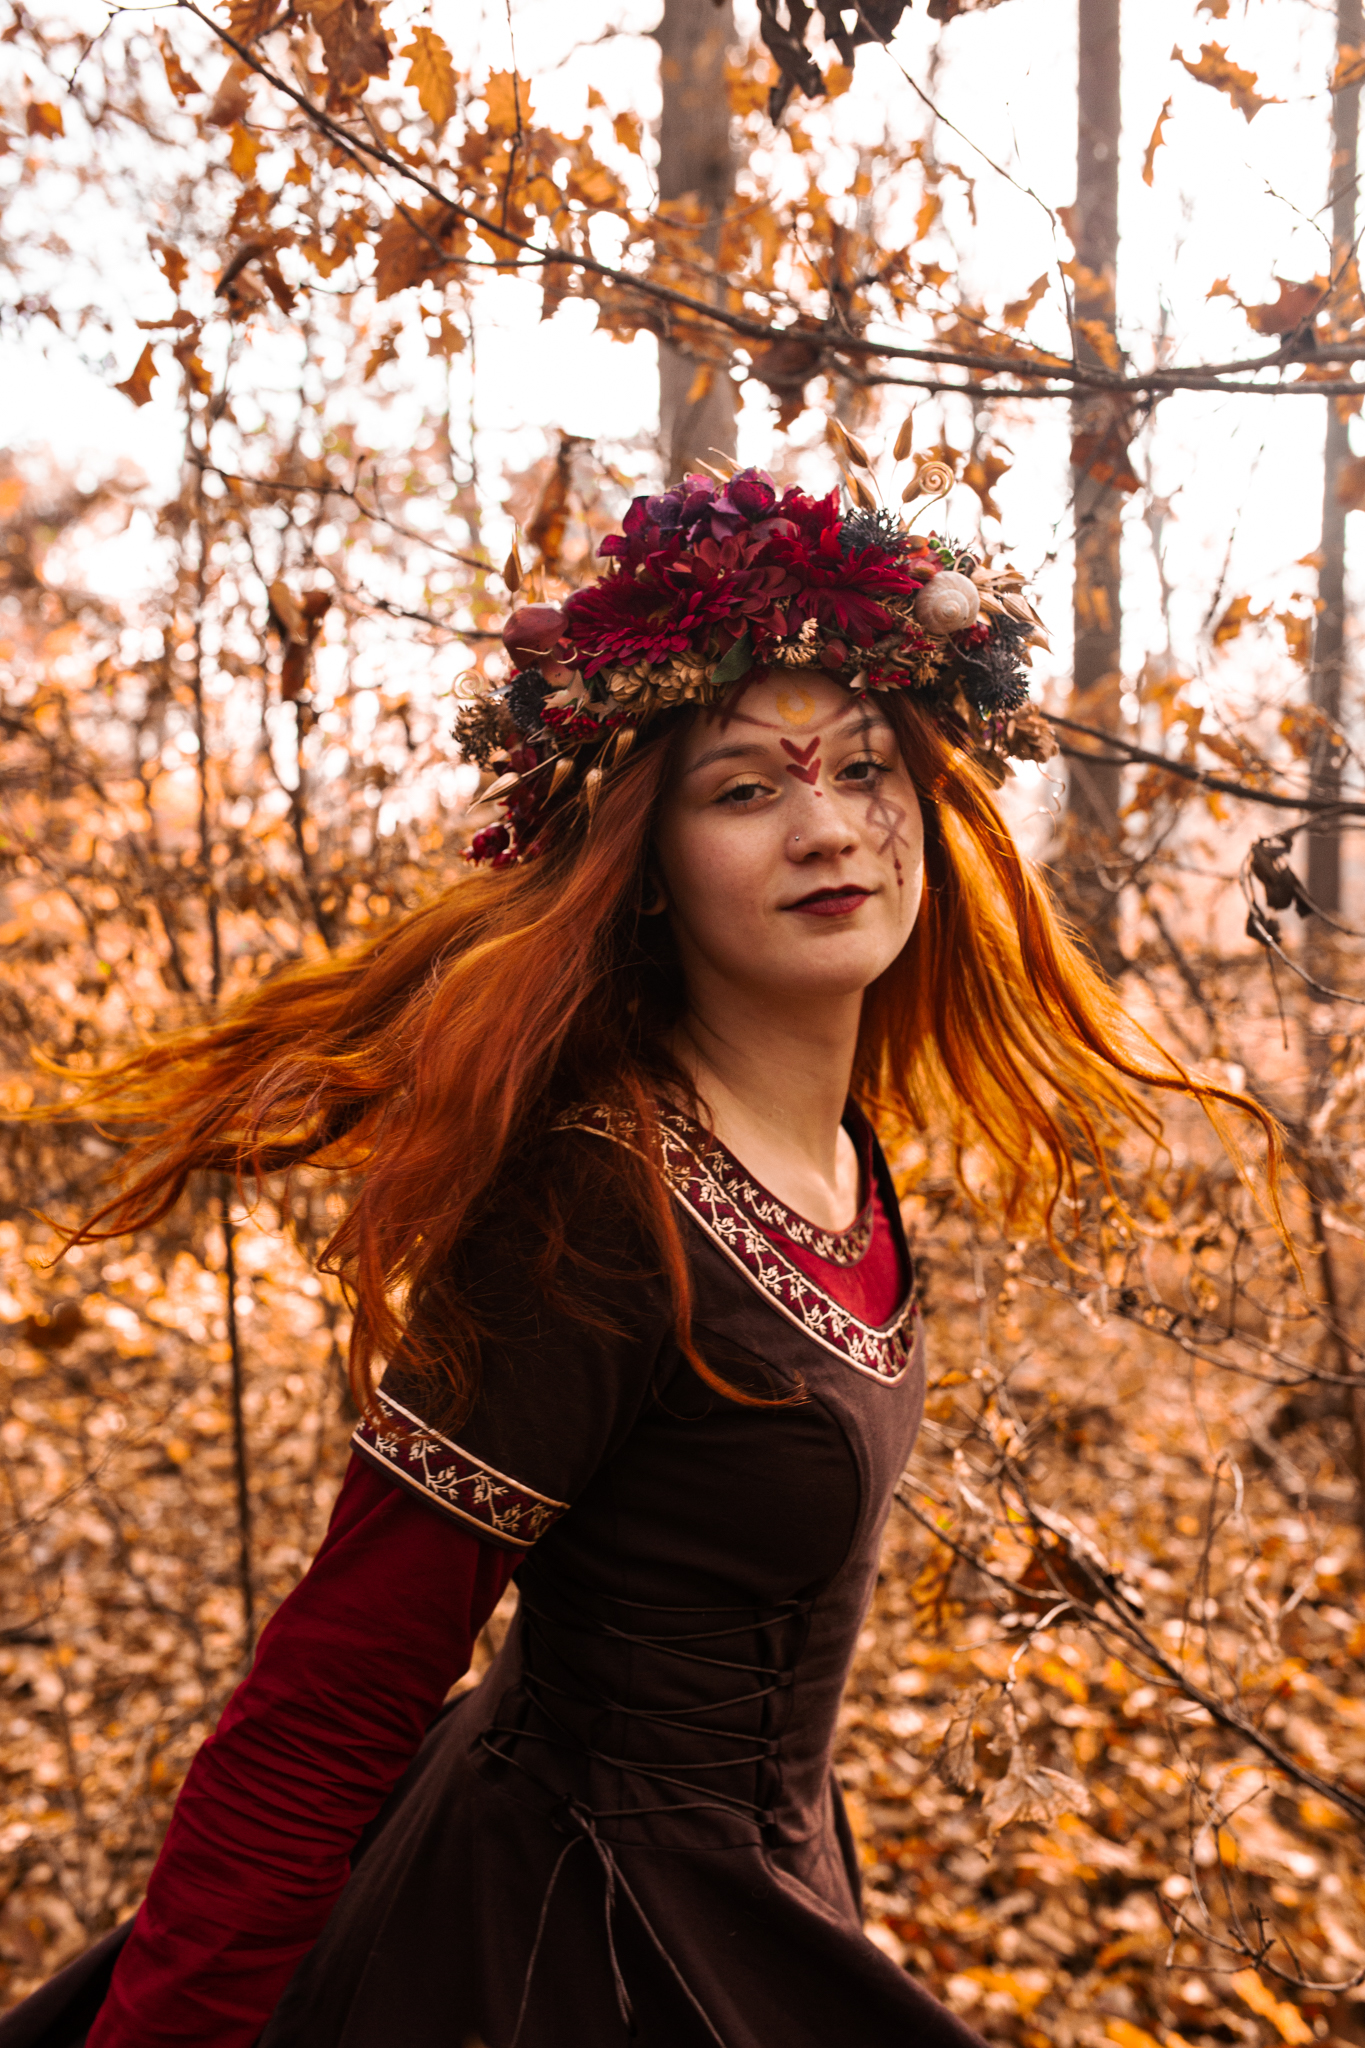 Krásná zrzavá žena ve fantasy šatech v podzimní krajině.